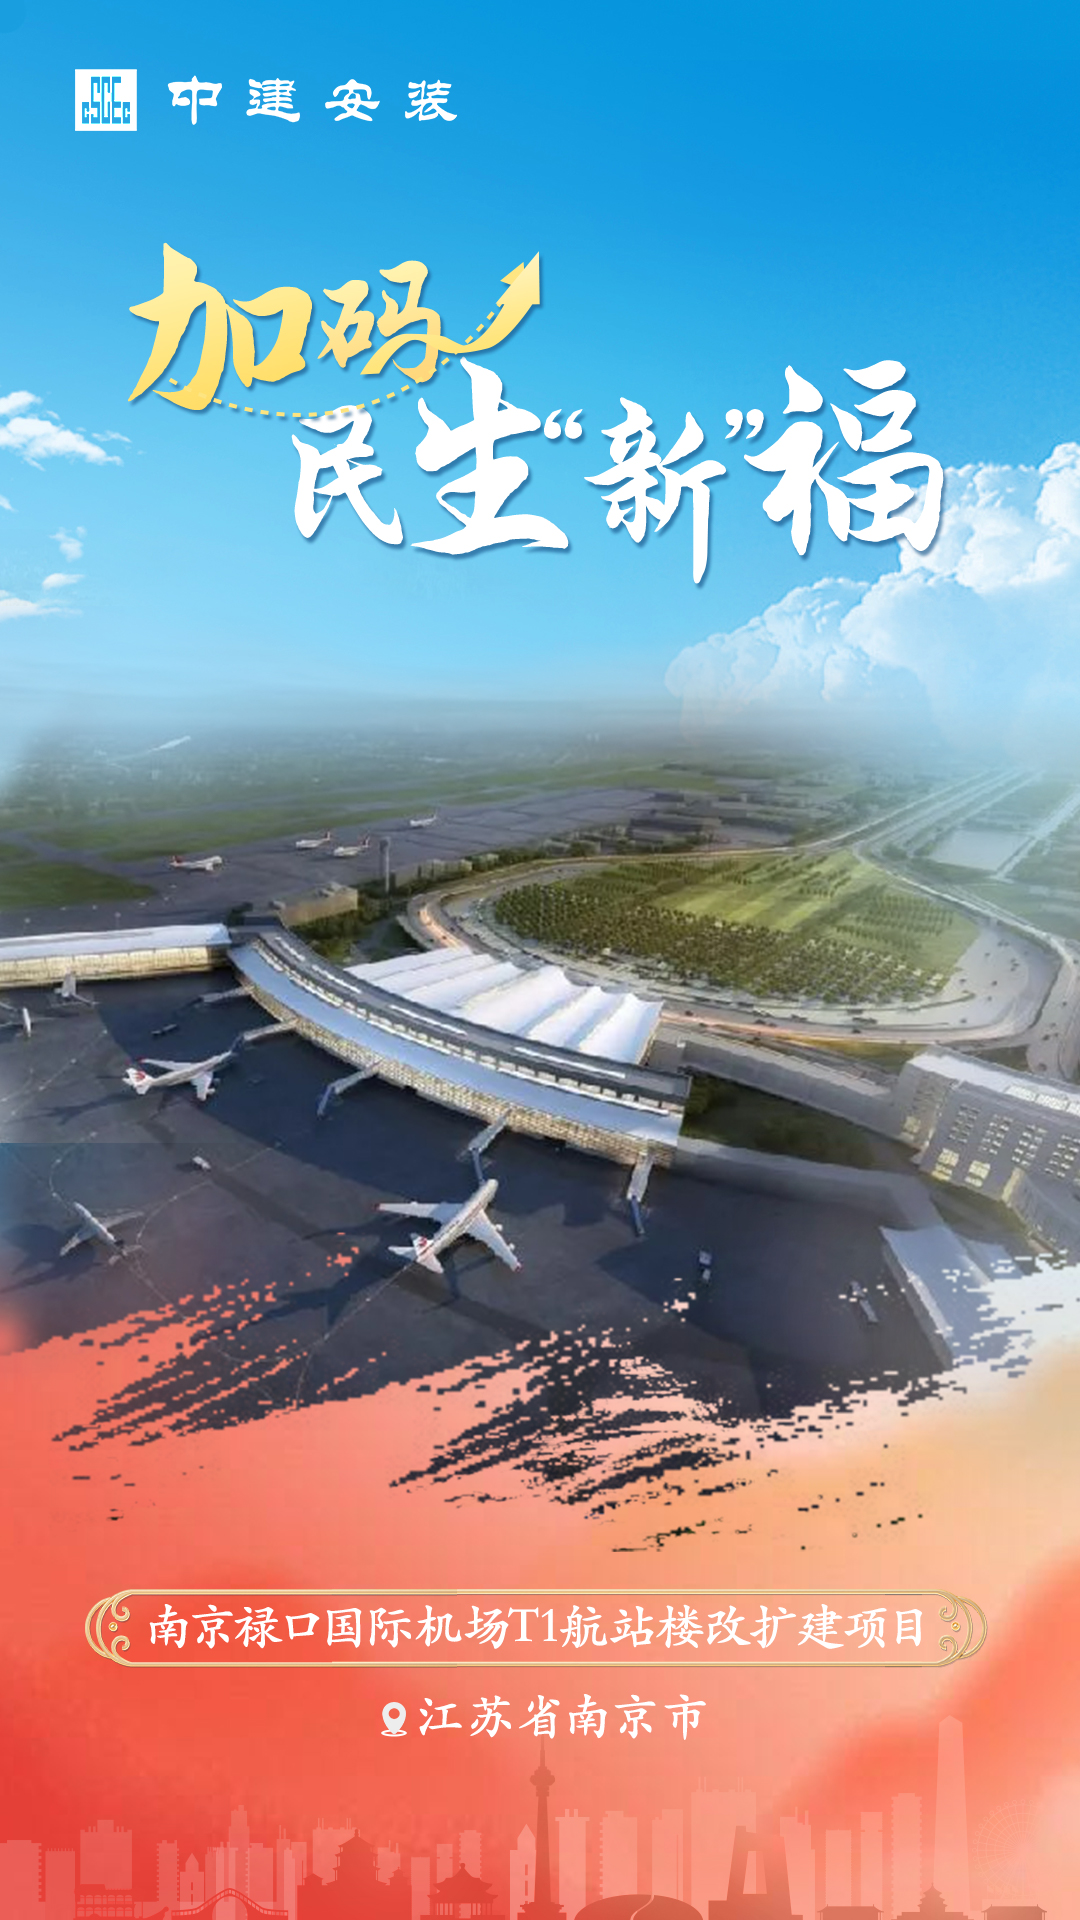 南京禄口国际机场T1航站楼改扩建项目.jpg